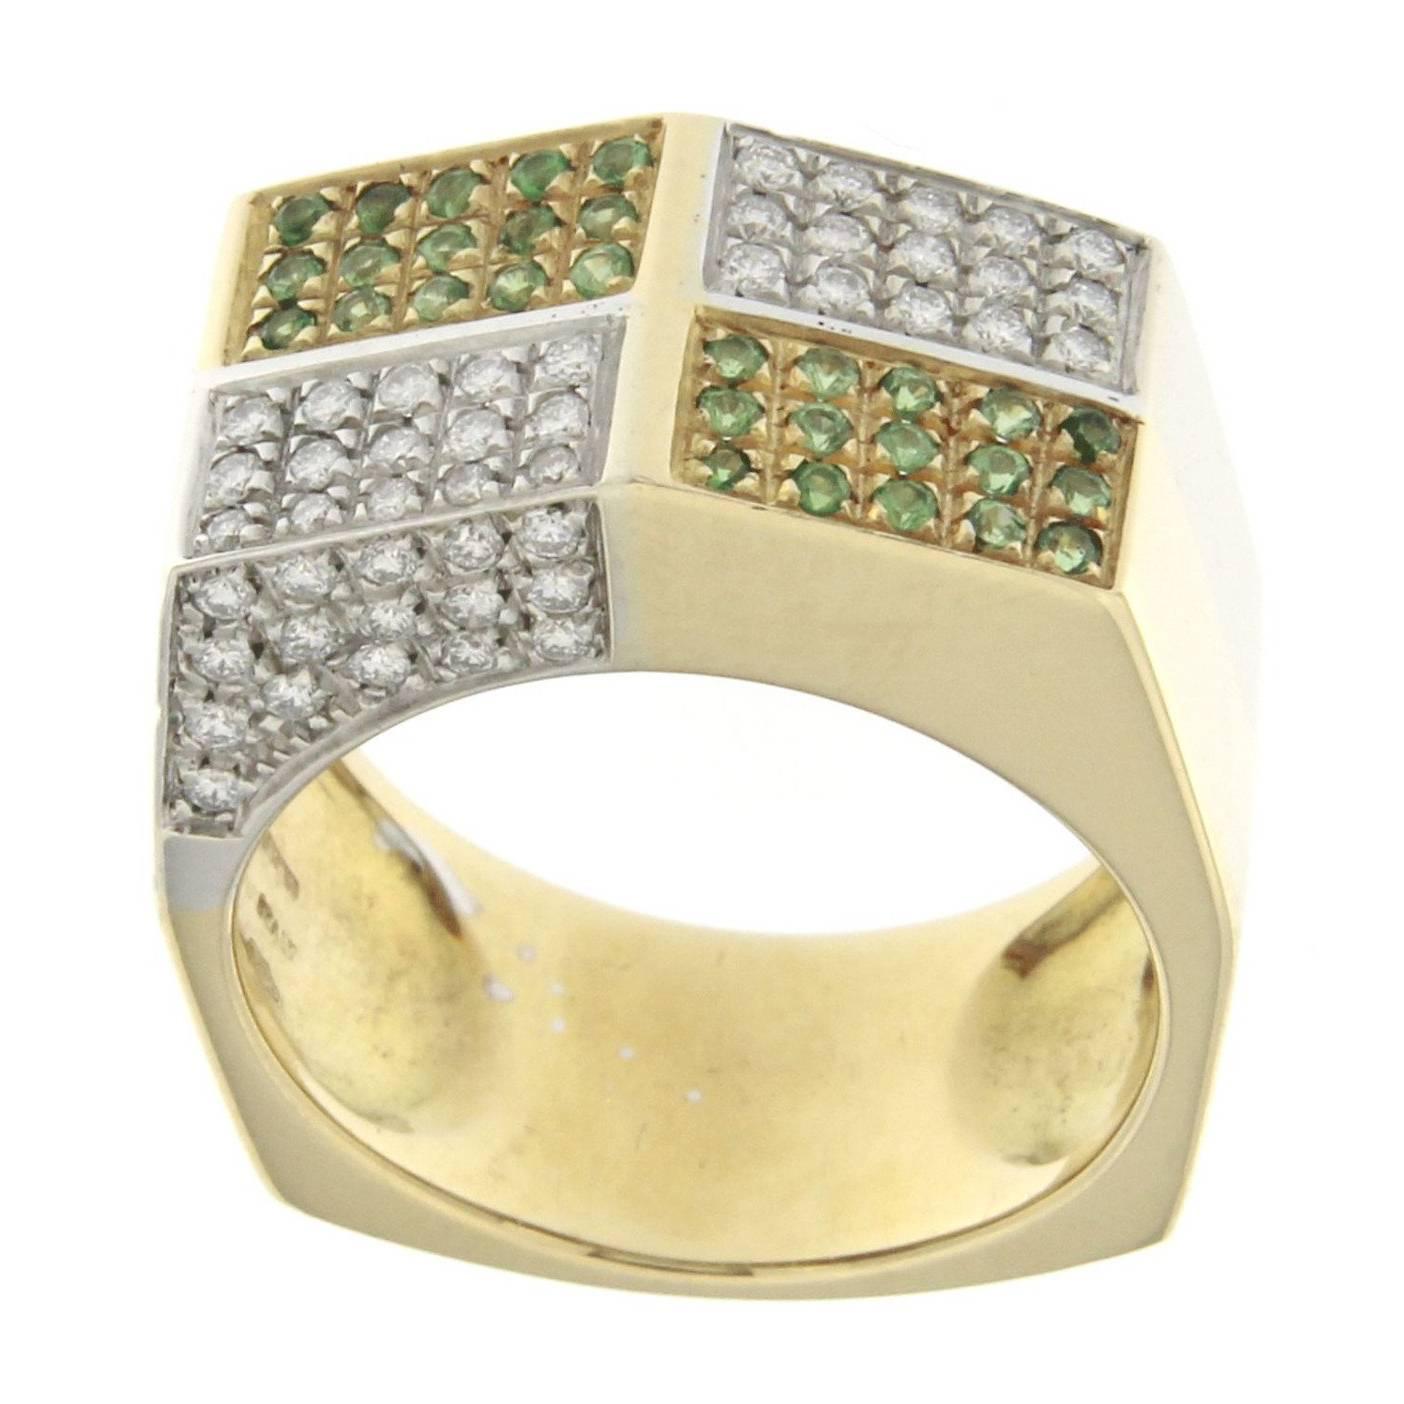 18 Karat Yellow Gold Design Ring with White Diamonds and Tsavorite